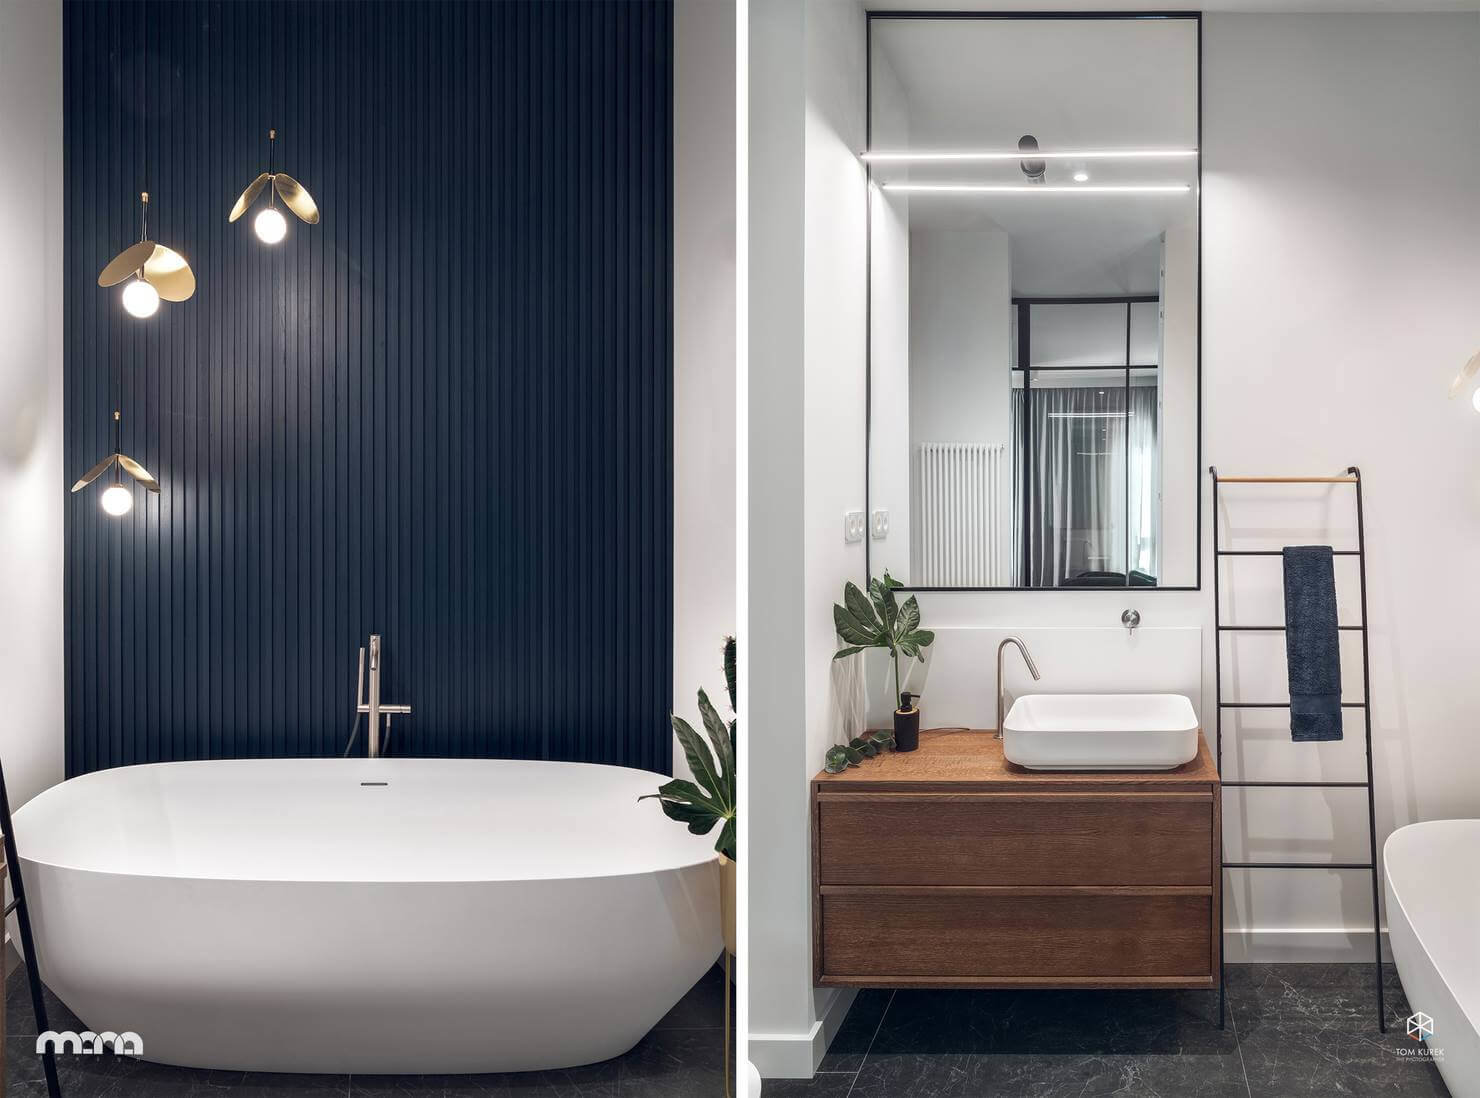 Цветовая гамма и стилистика интерьера спальни плавно «перетекает» в ванную комнату